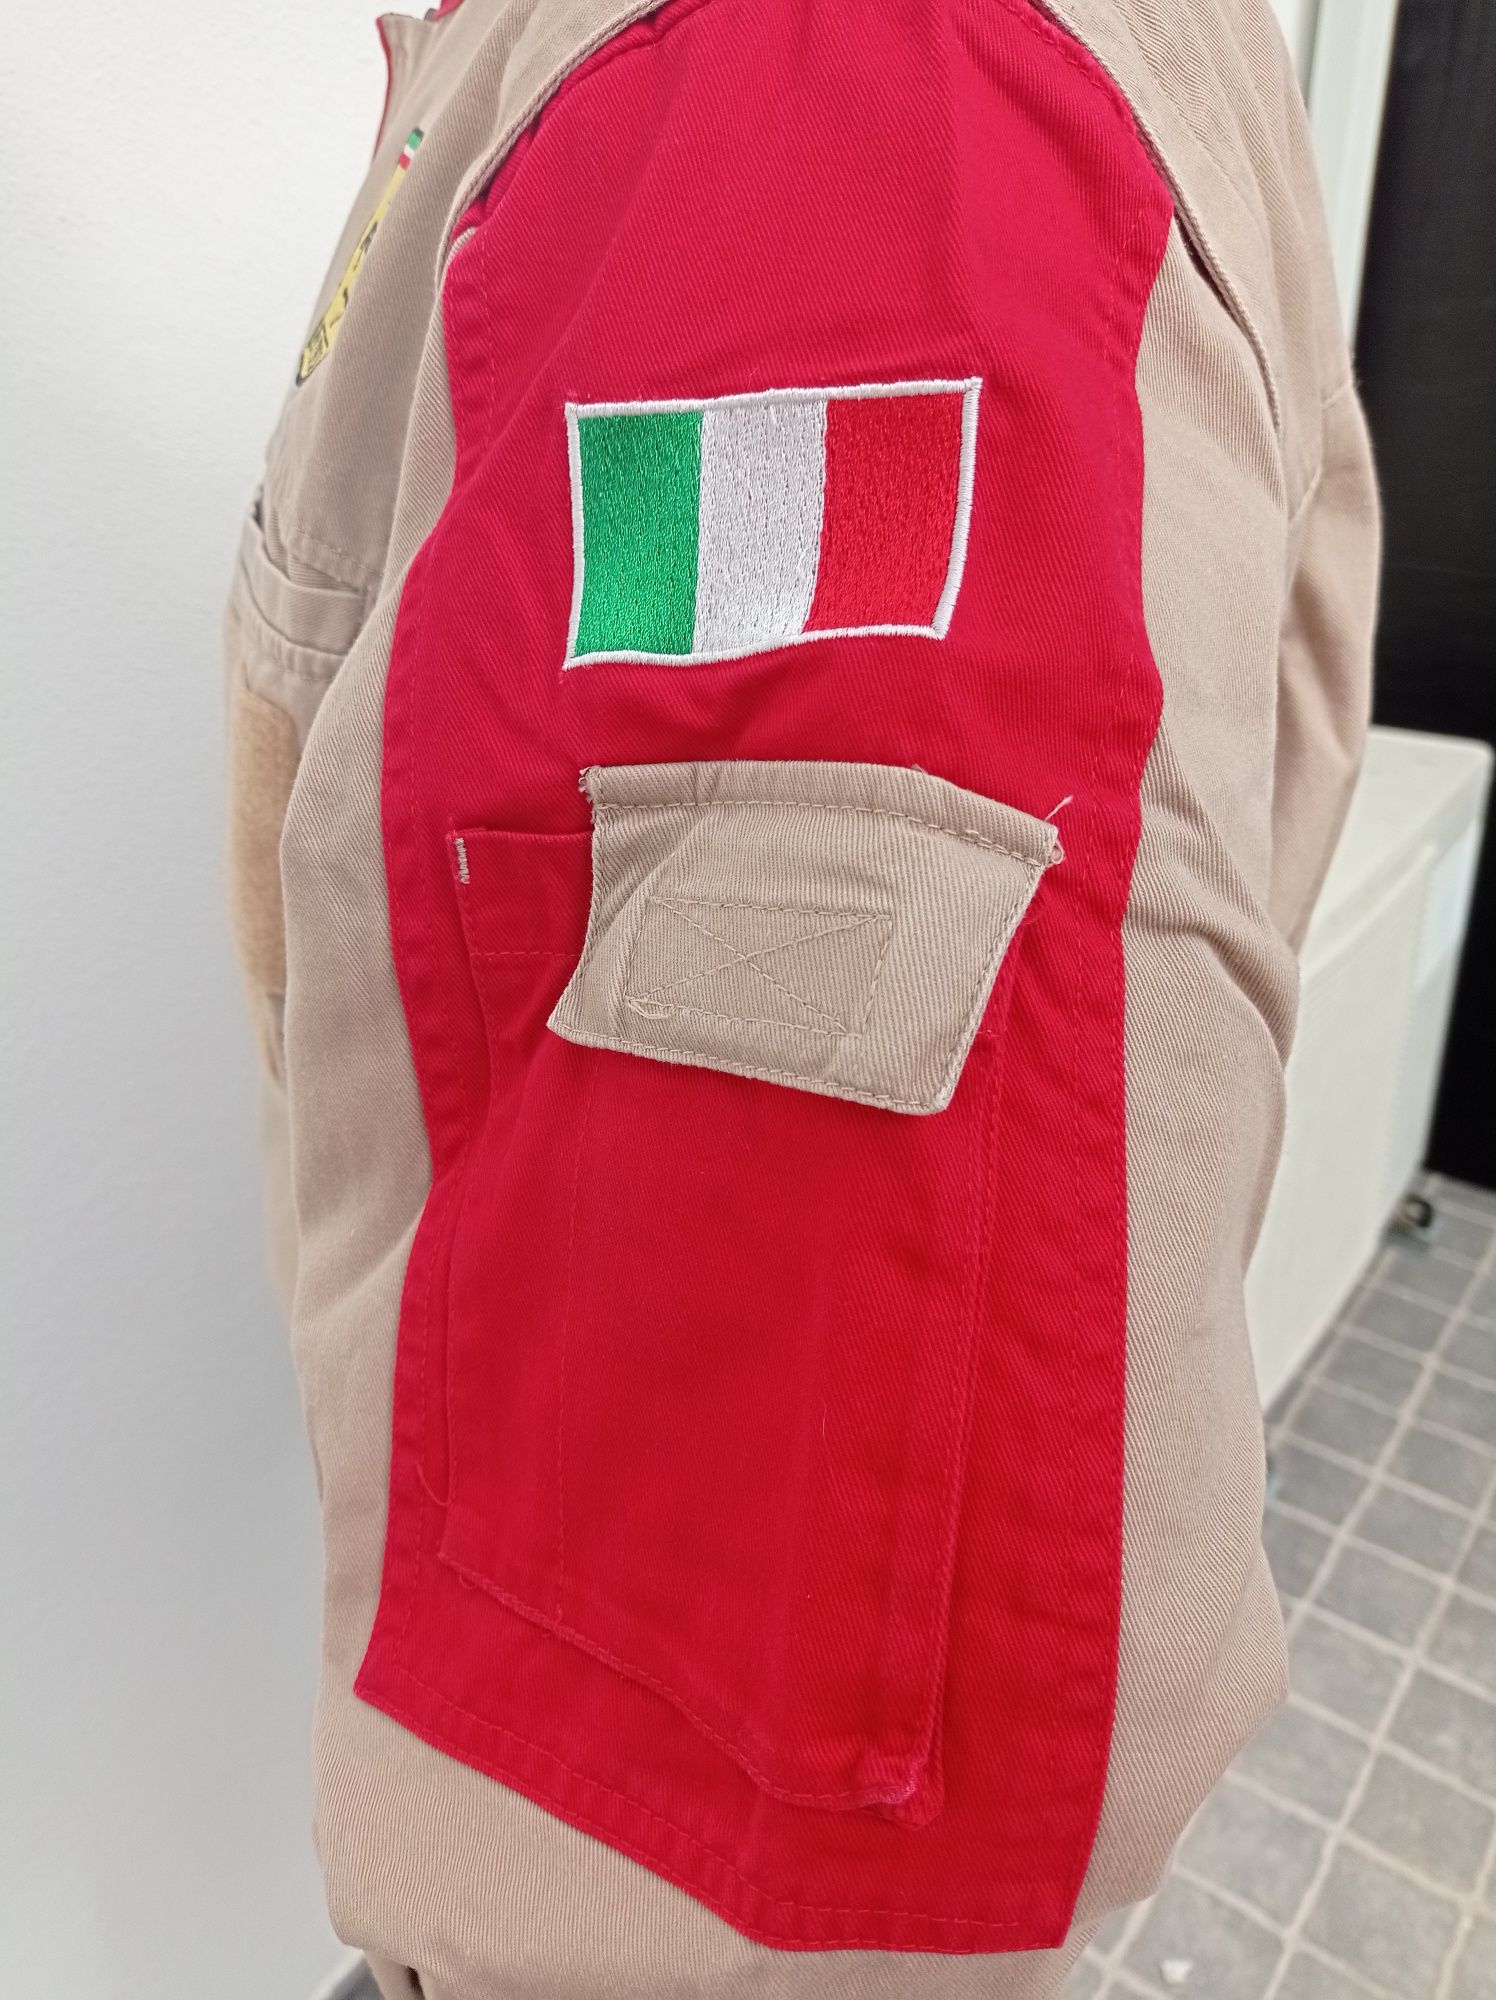 Blusão Ferrari usado na linha de montagem da Ferrari, coleção